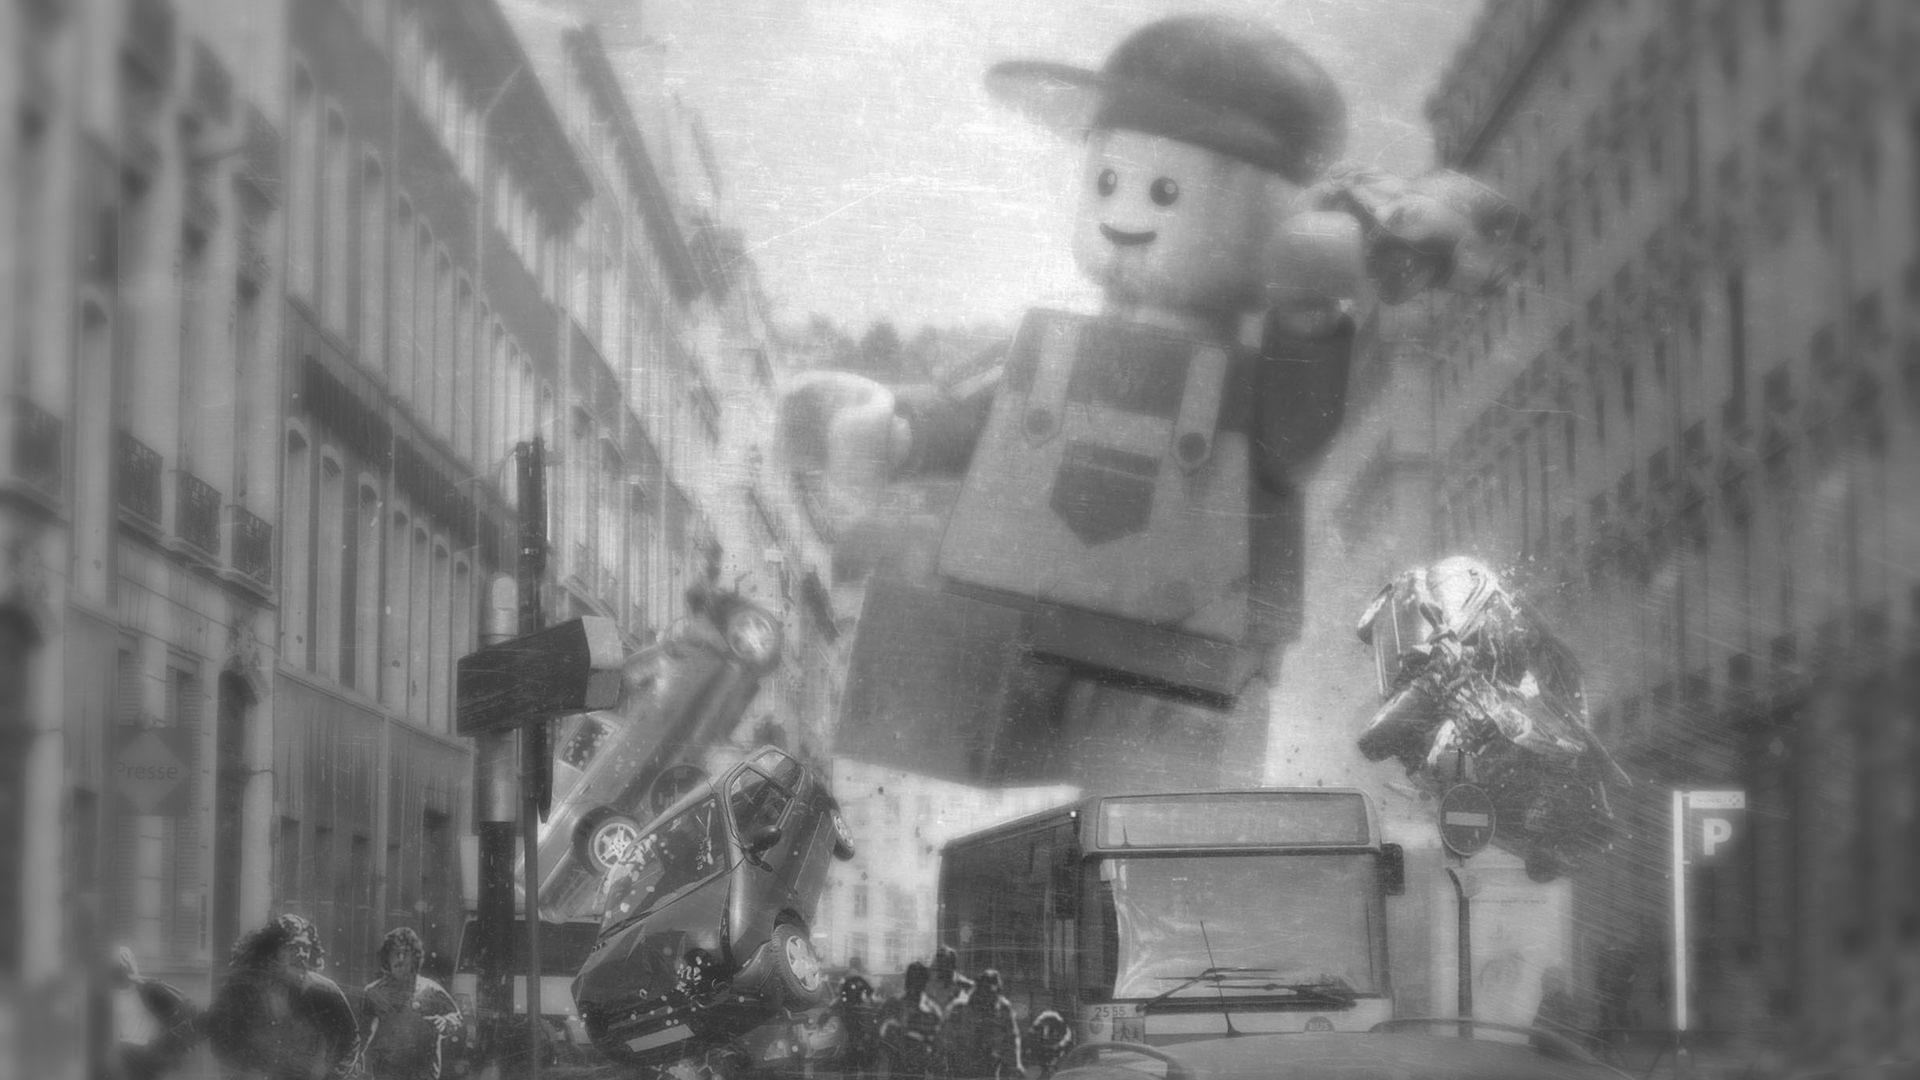 General 1920x1080 Florent Maudoux Freaks' Squeele French comics LEGO toys artwork city destruction monochrome